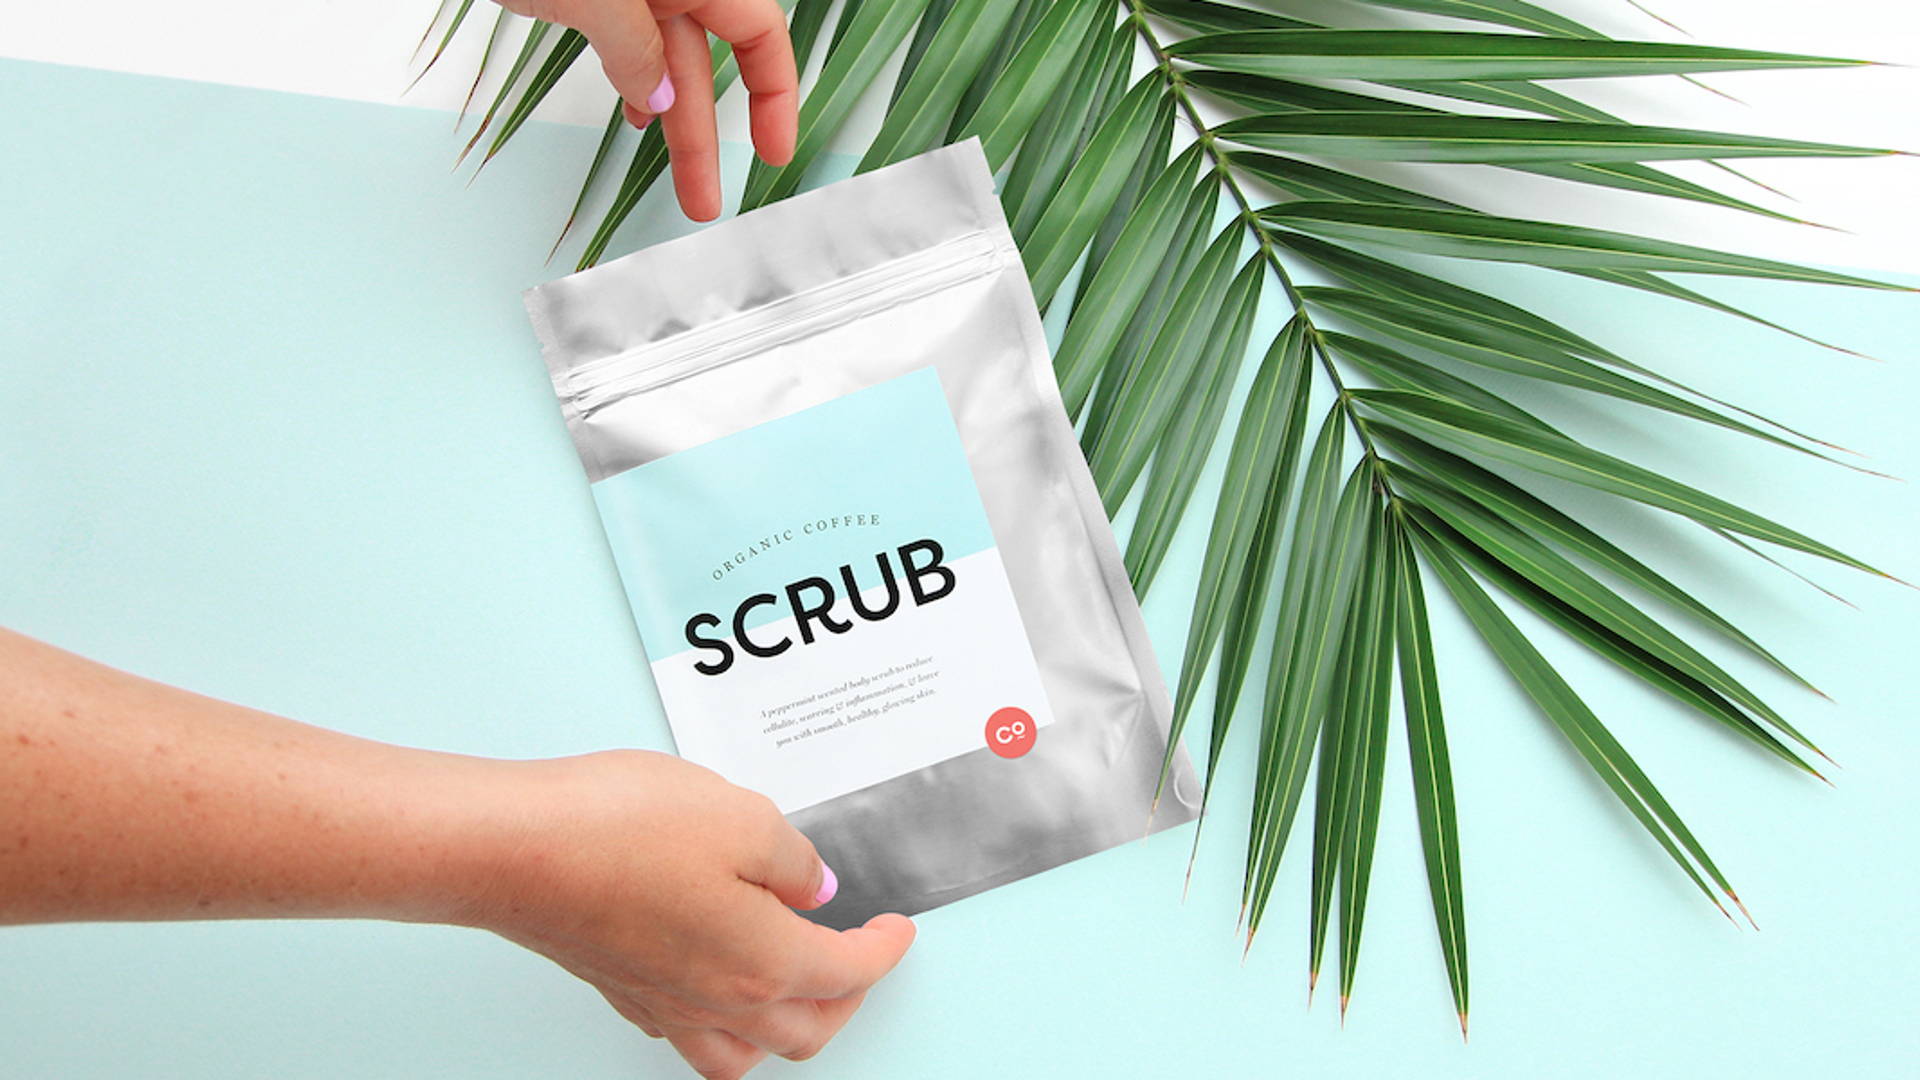 Featured image for SCRUB Body Scrub by Coffee Organics